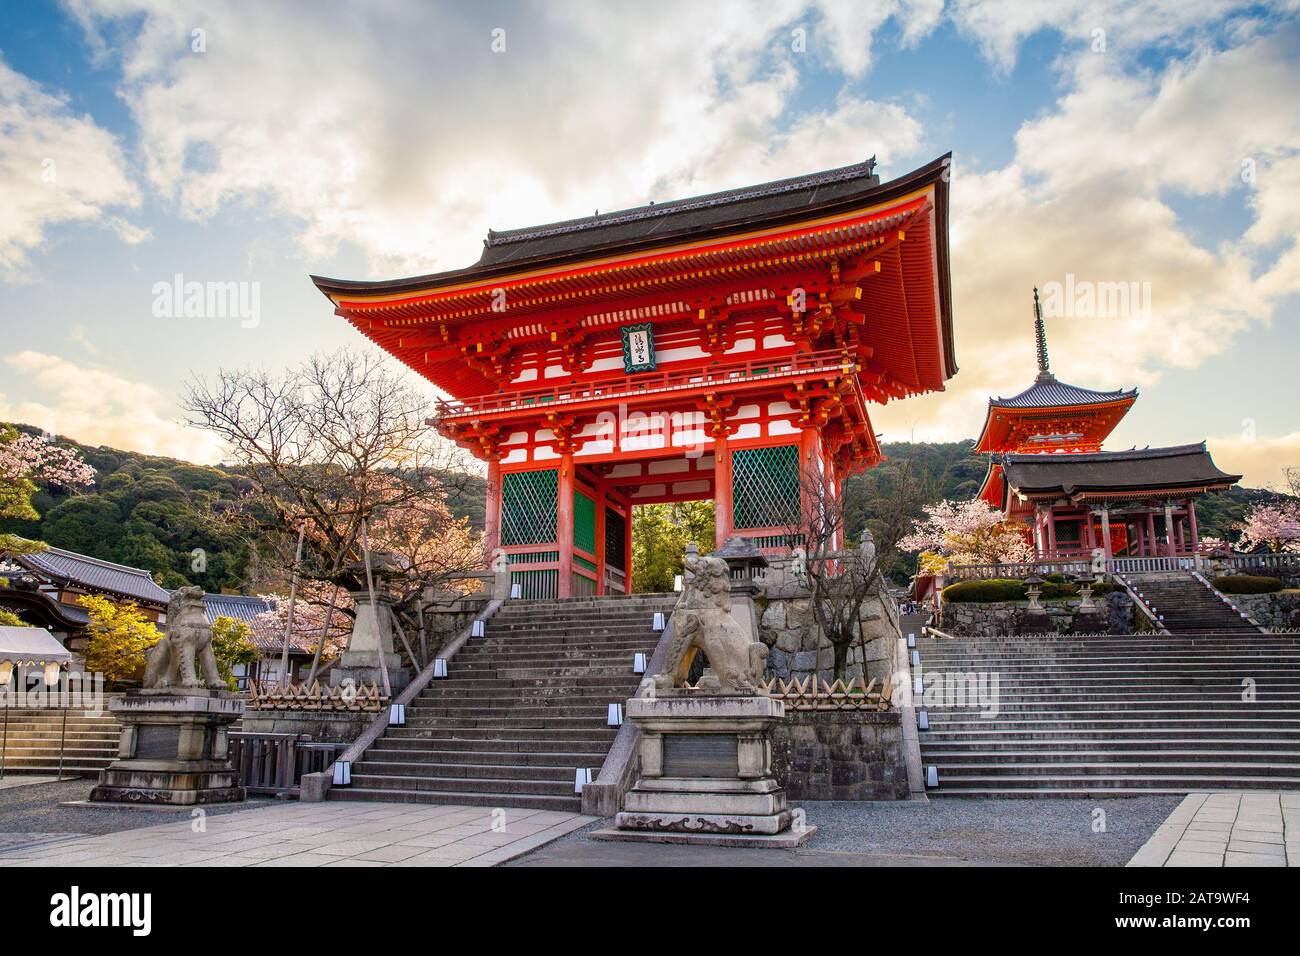 Deva Tor von Kiyomizu-dera in kyoto, Japan (Der ausländische Text bedeutet auf Englisch Kiyomizu-dera) Stockfoto